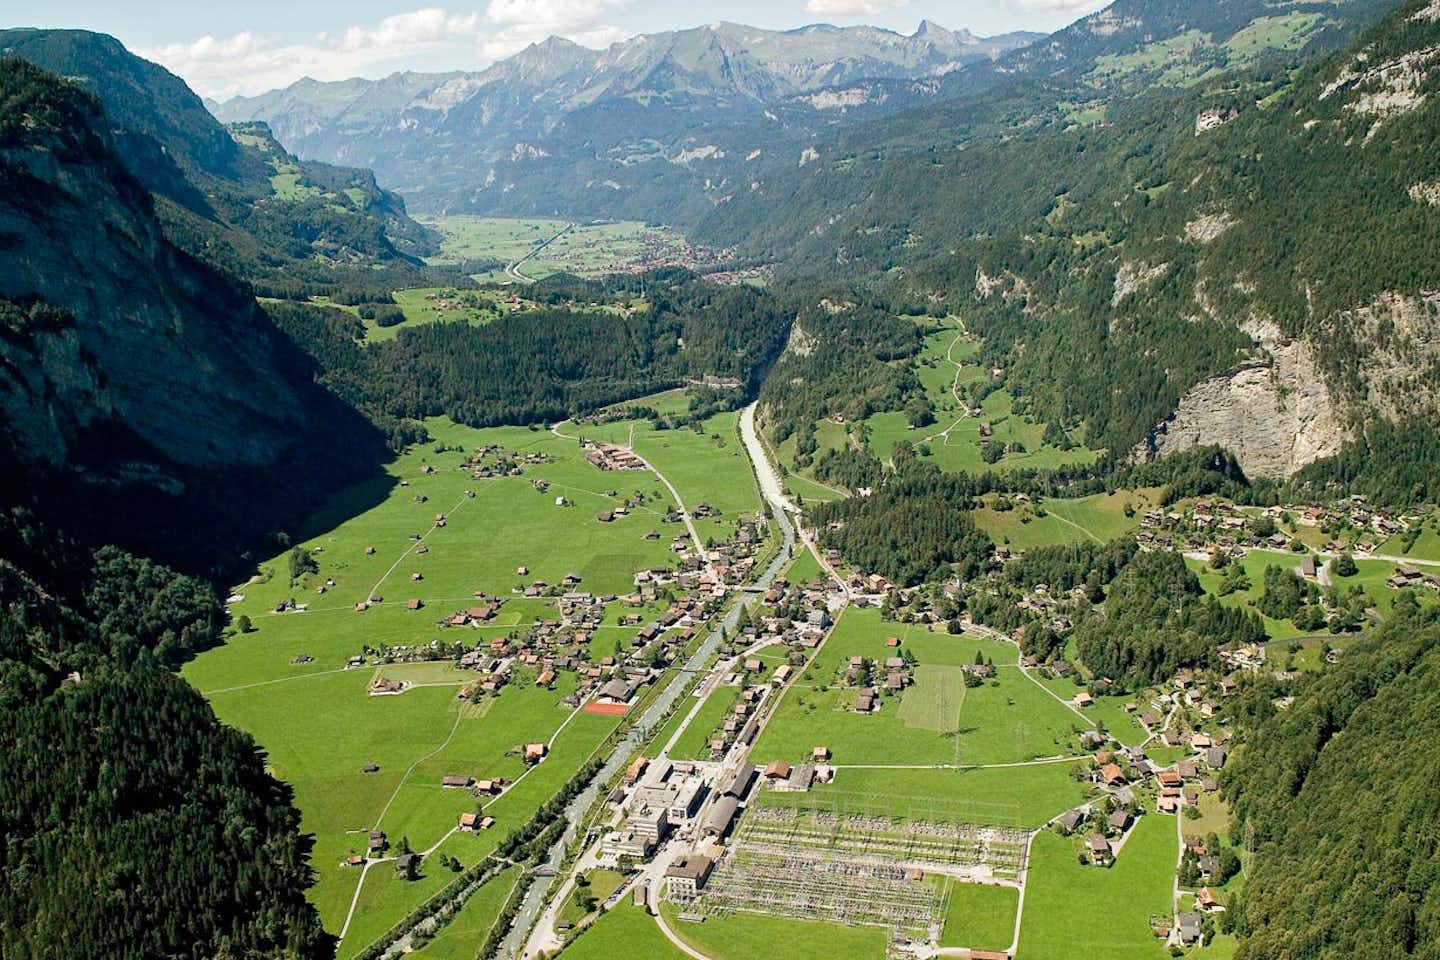 Camping Aareschlucht - Luftsicht auf den Campingplatz in einem Tal der Alpen